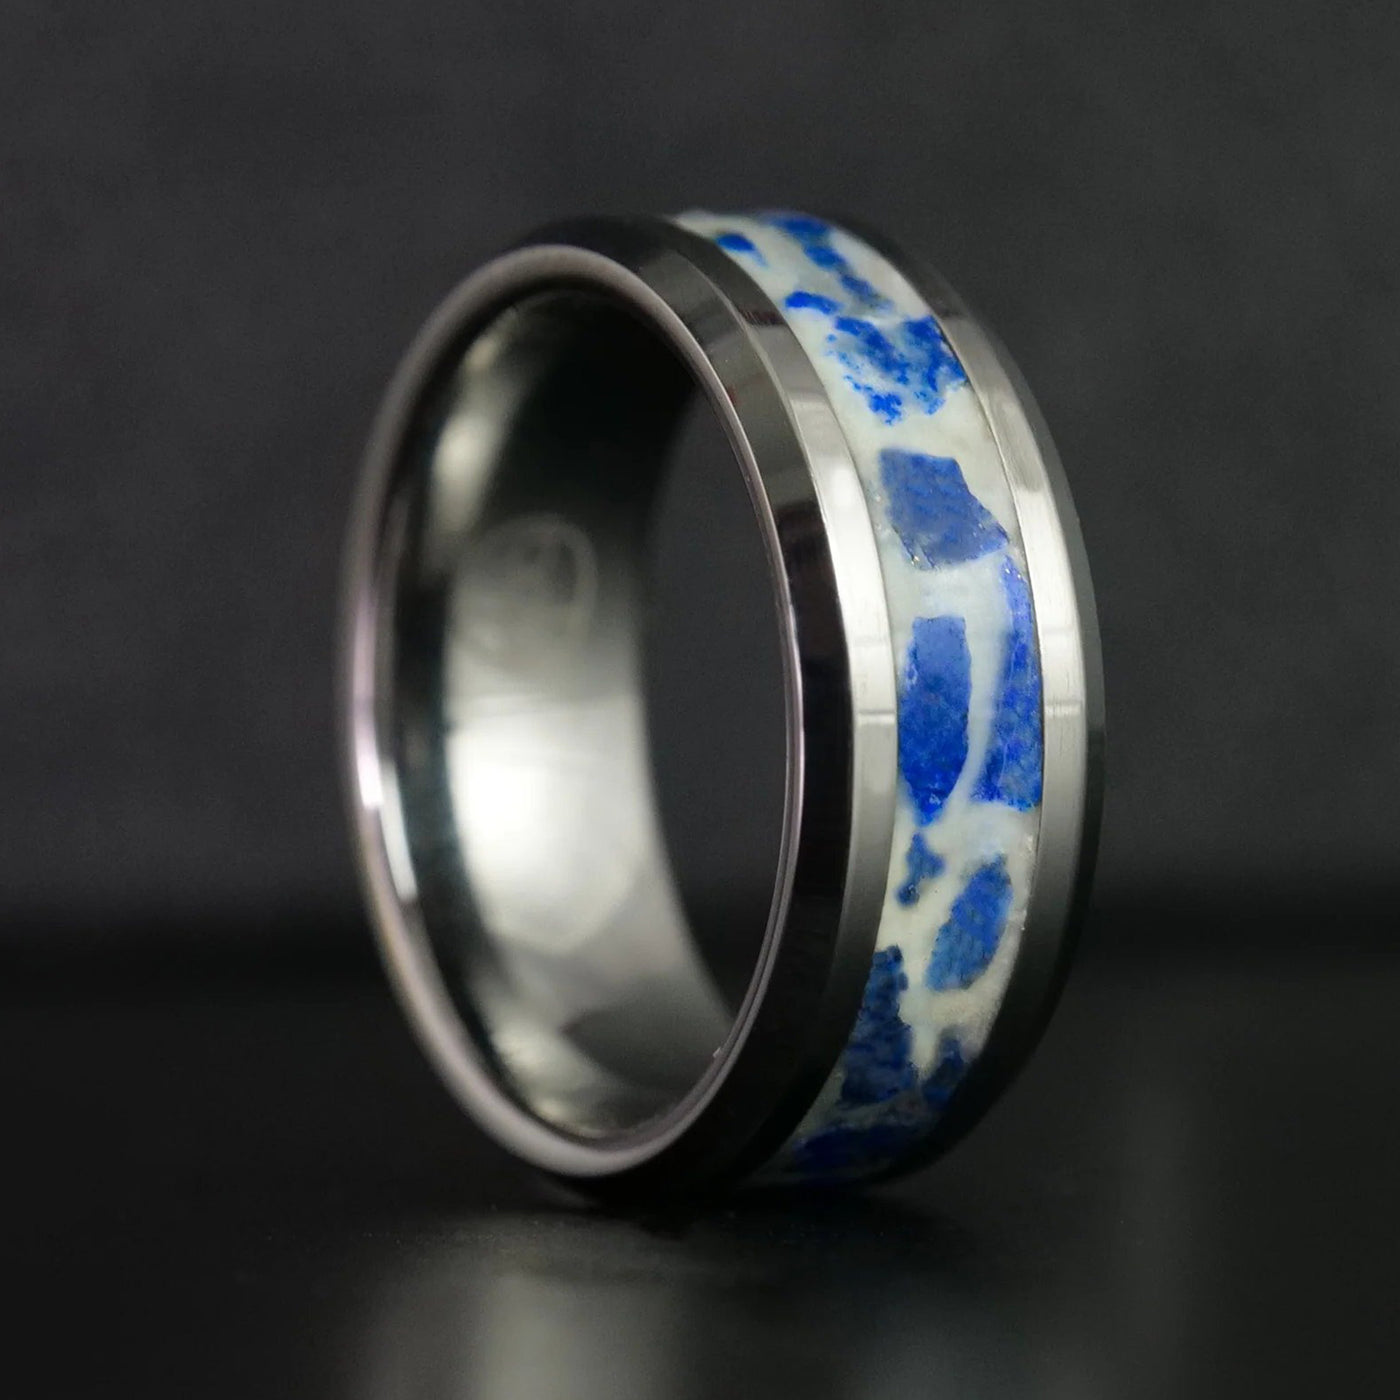 December Birthstone Ring | Lapis Lazuli Glowstone Ring - Patrick Adair Designs